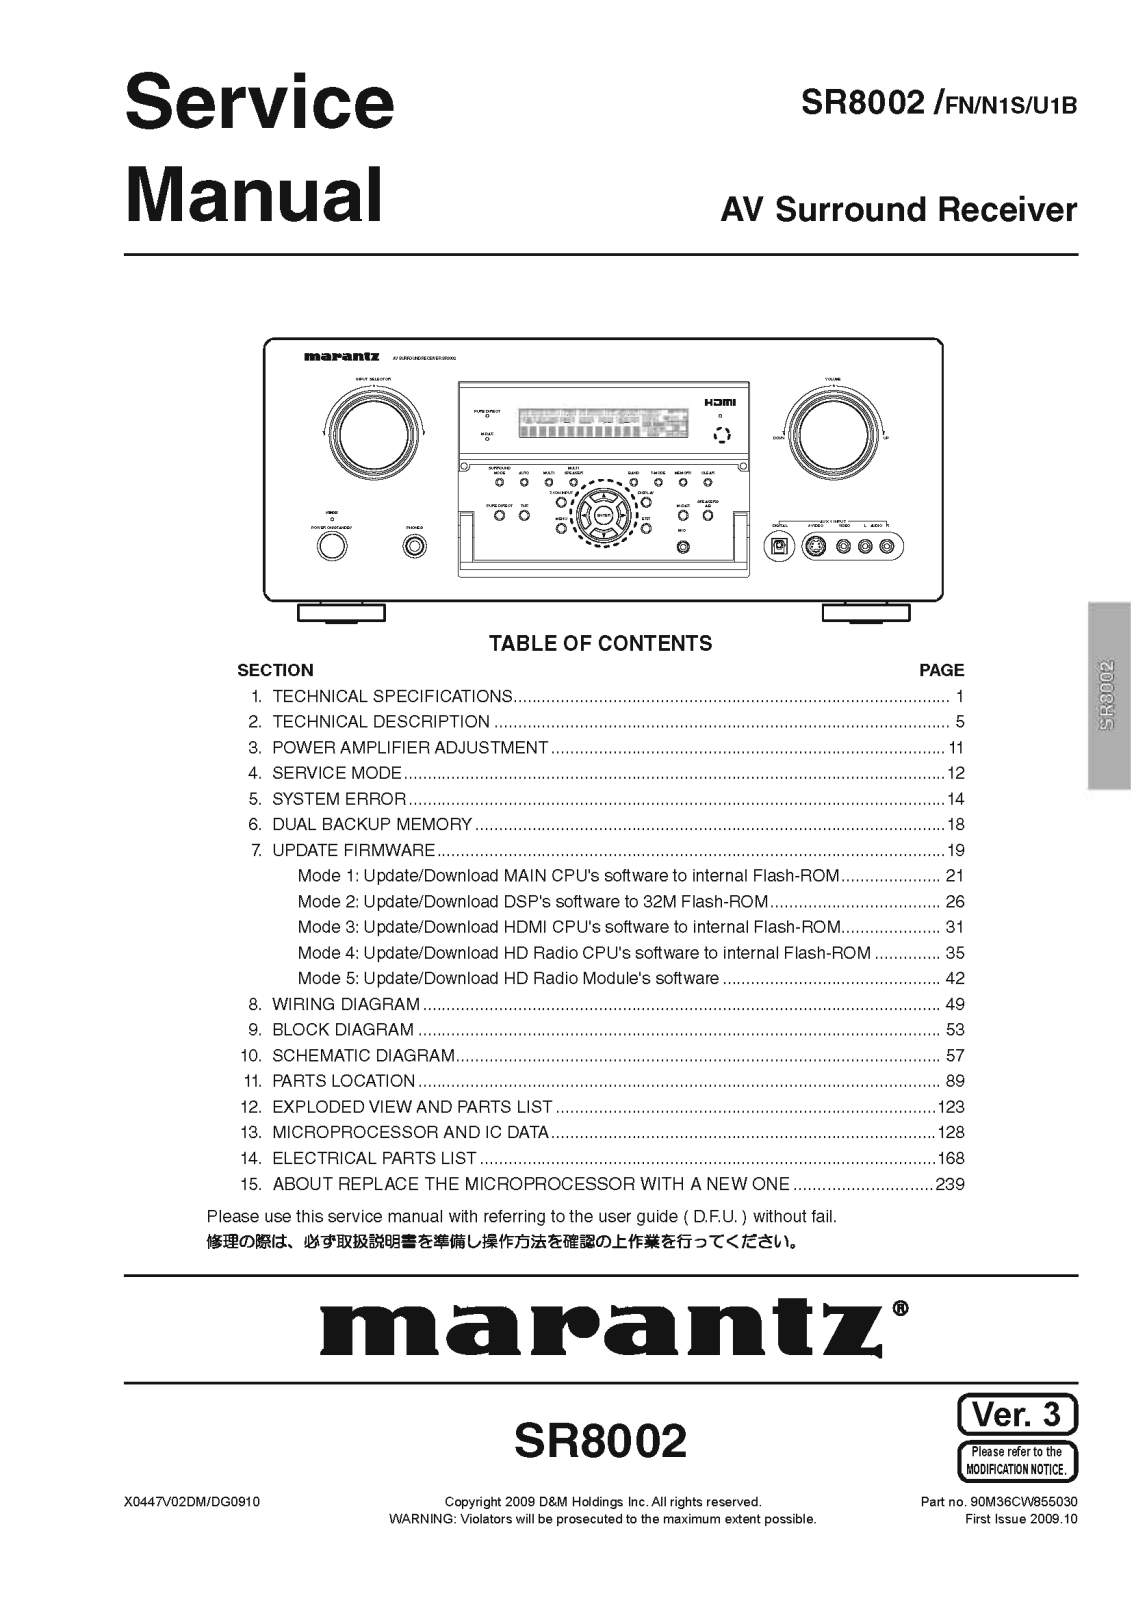 Marantz SR-8002 Service Manual